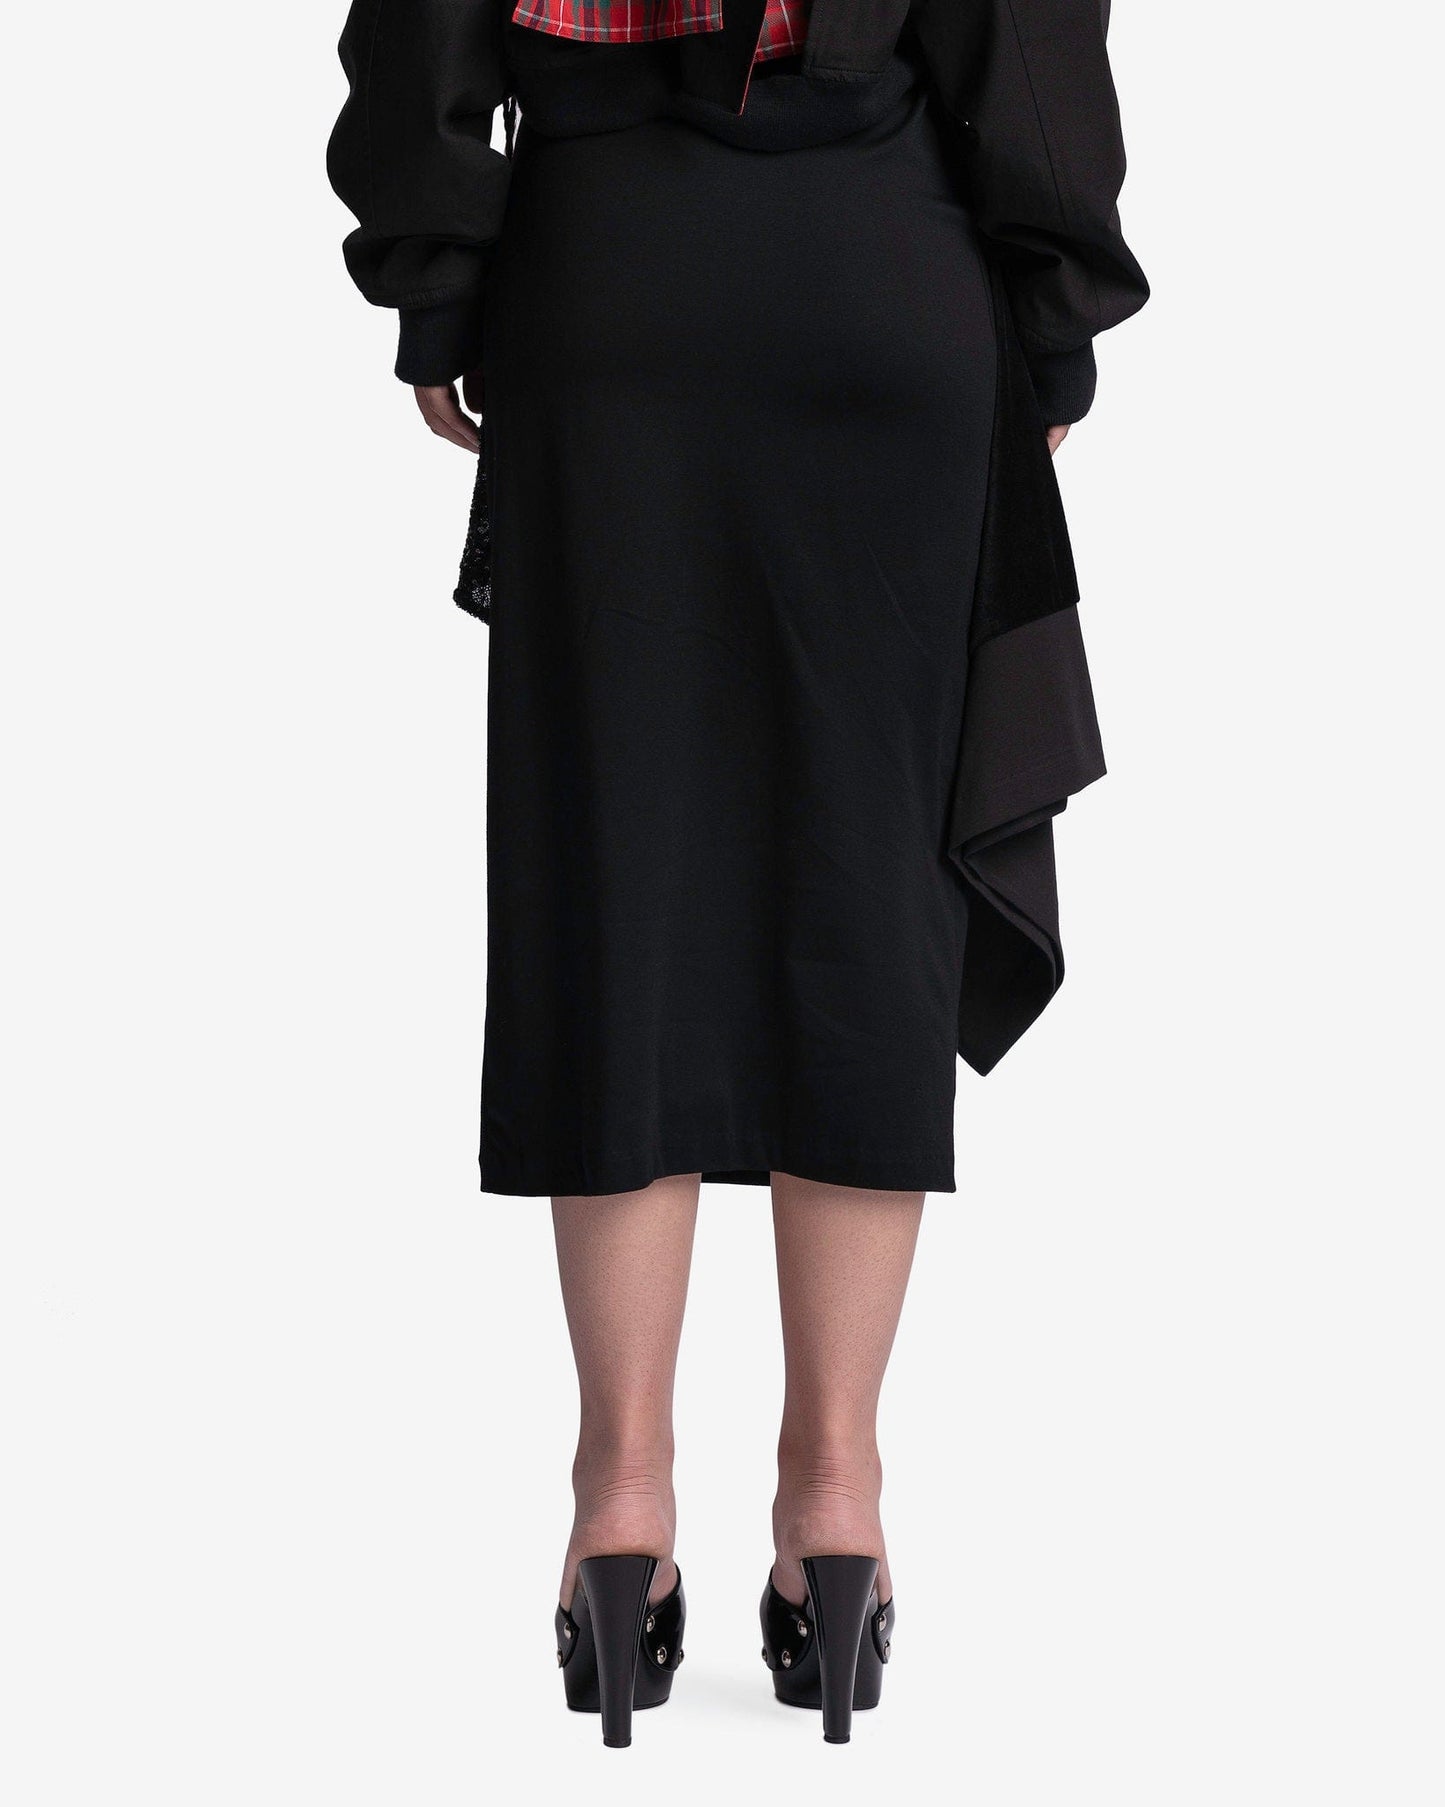 Undercover Women Skirts Sequined Skirt in Black